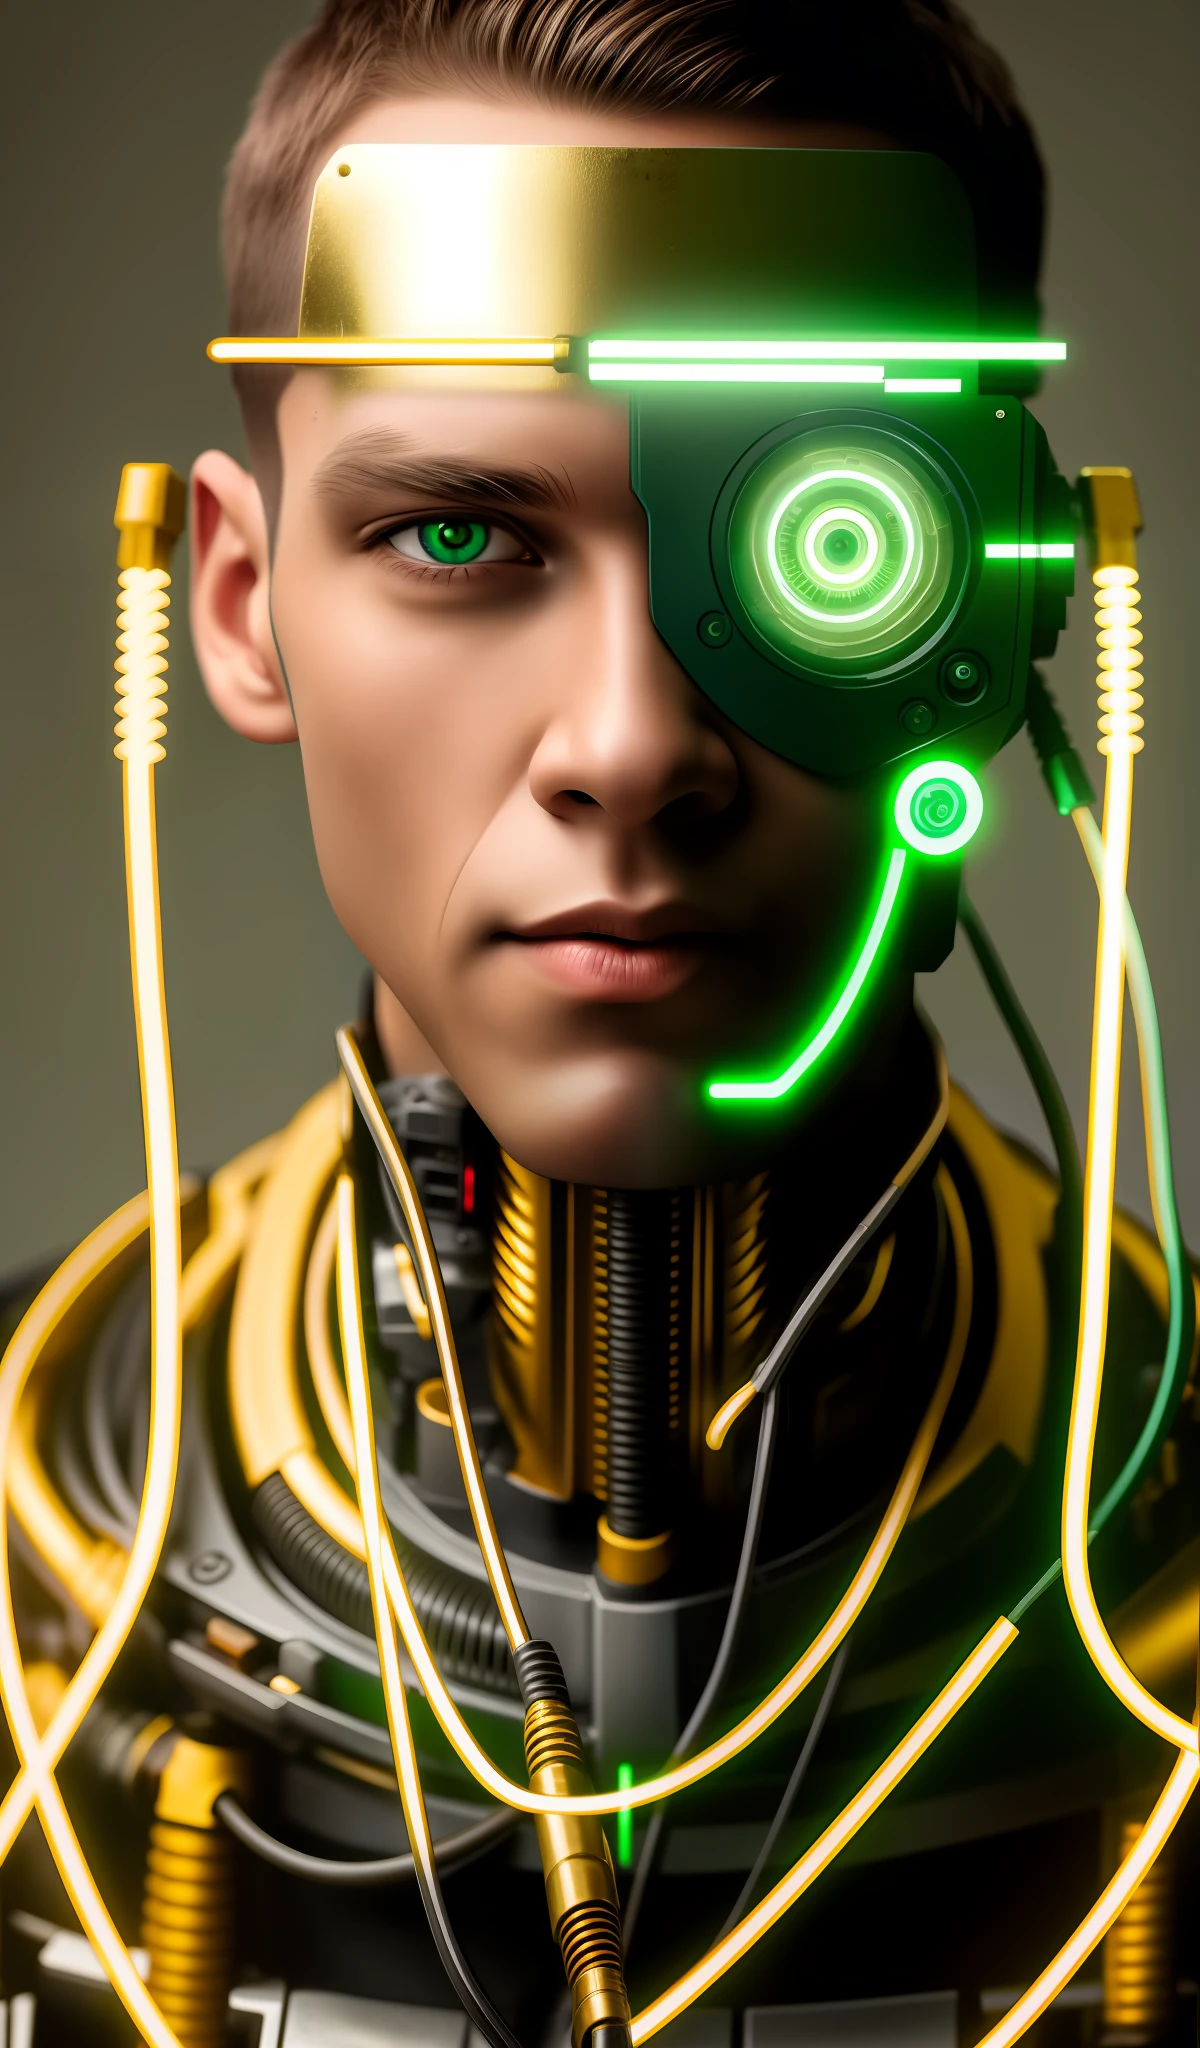 Hombre Cyborg Plano Medio, cabeza llena, ojos verdes, mono, Model Face, Cables expuestos, Aceite de oro que se escapa de cables oxidados.